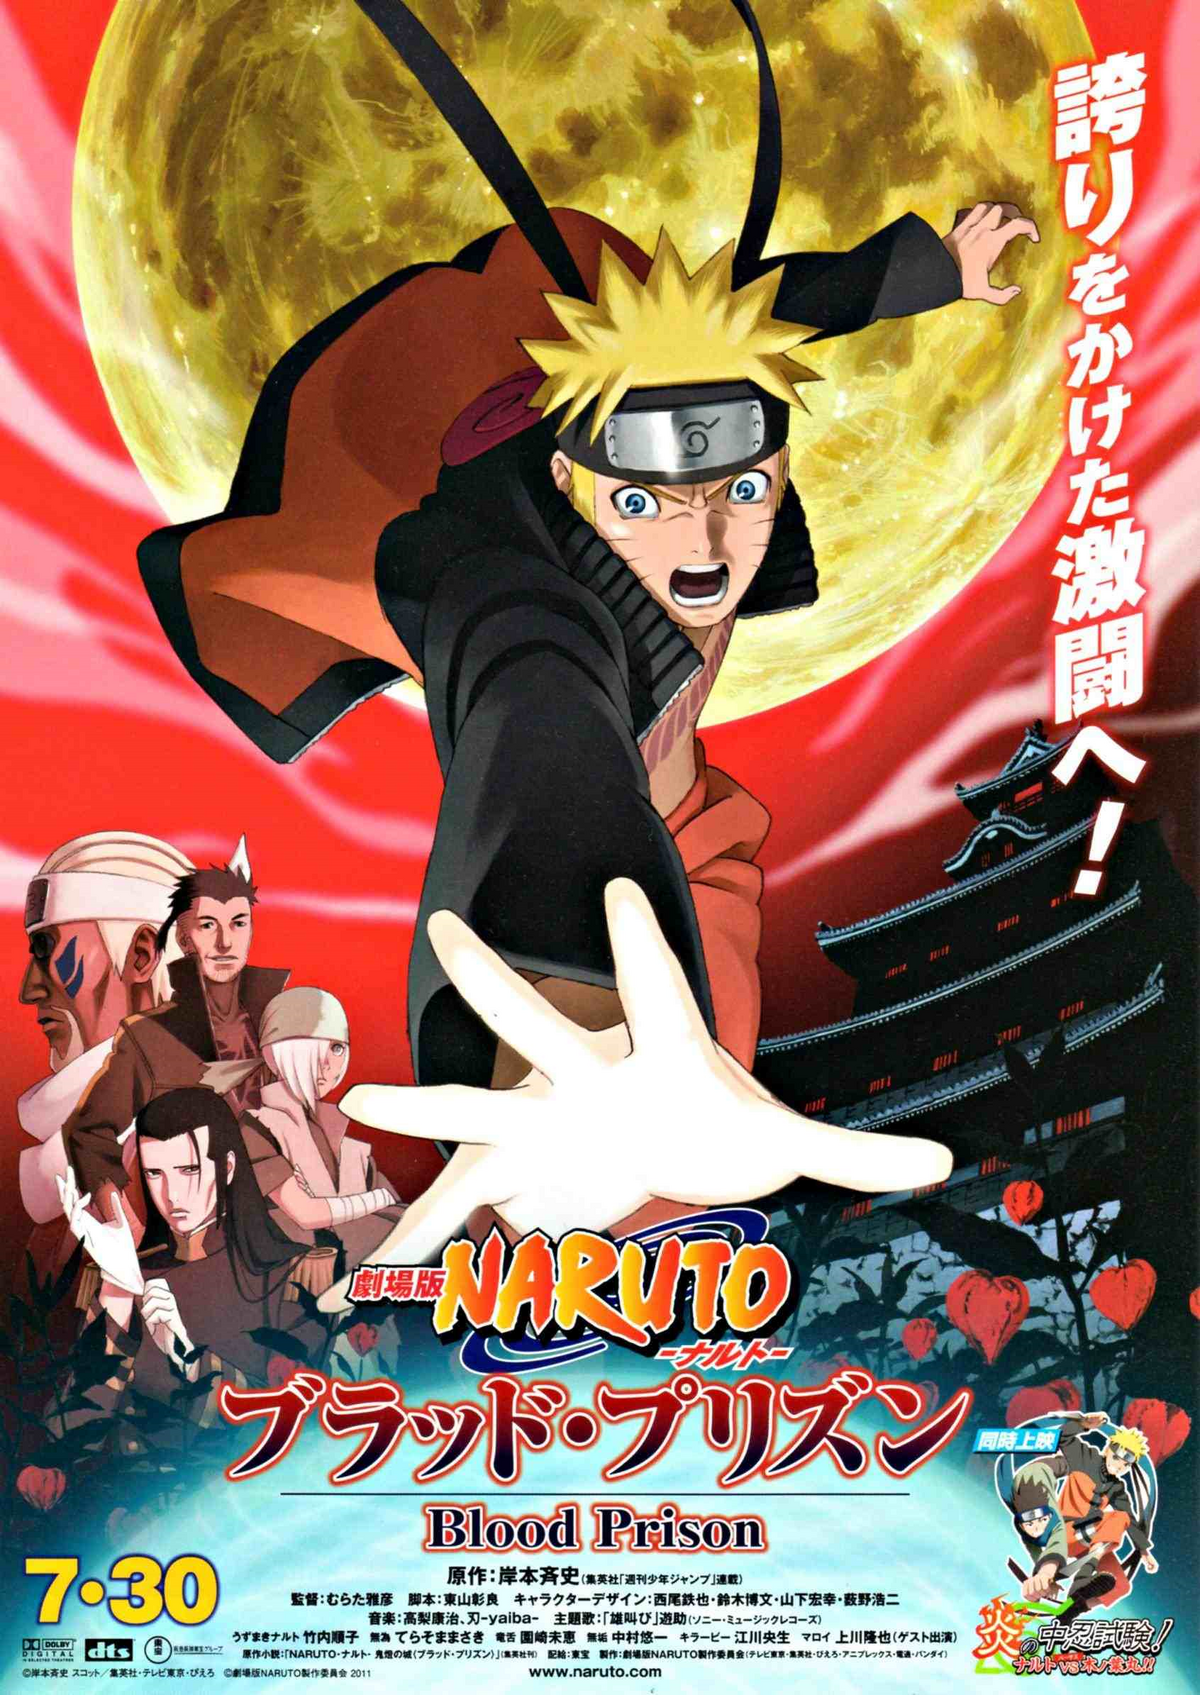 Road to Ninja: Naruto O Filme, Wiki